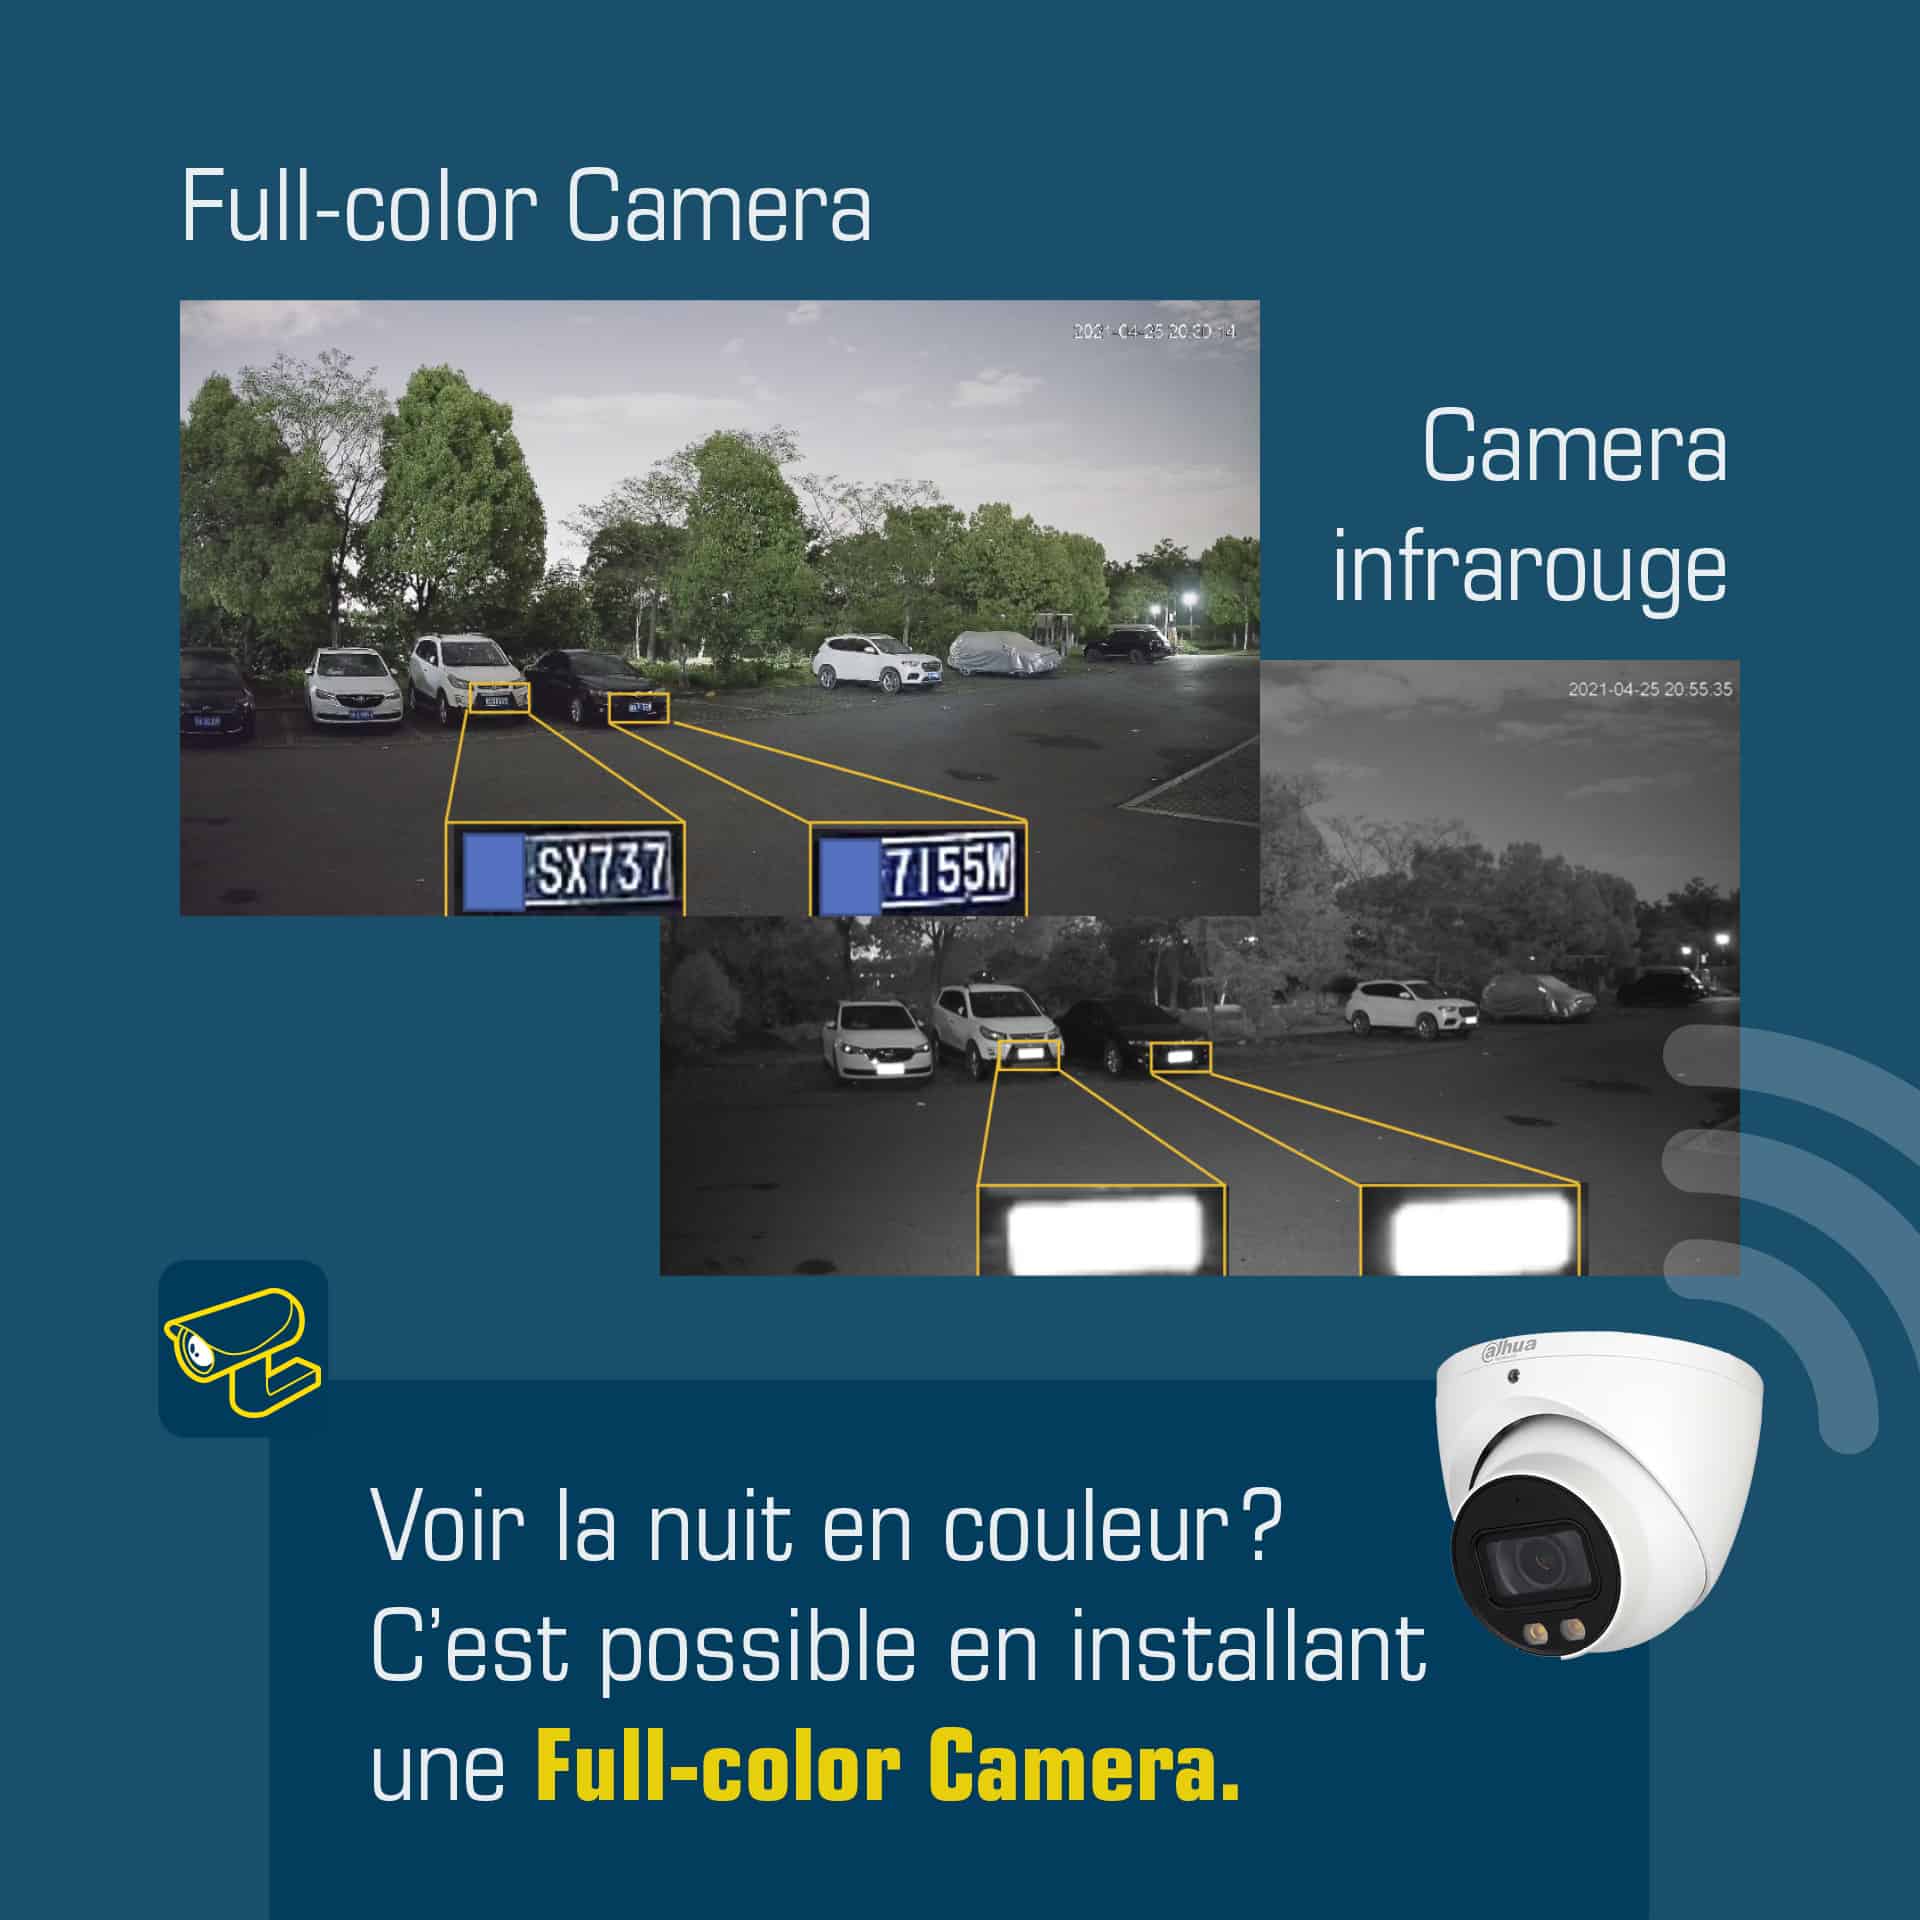 full-color camera